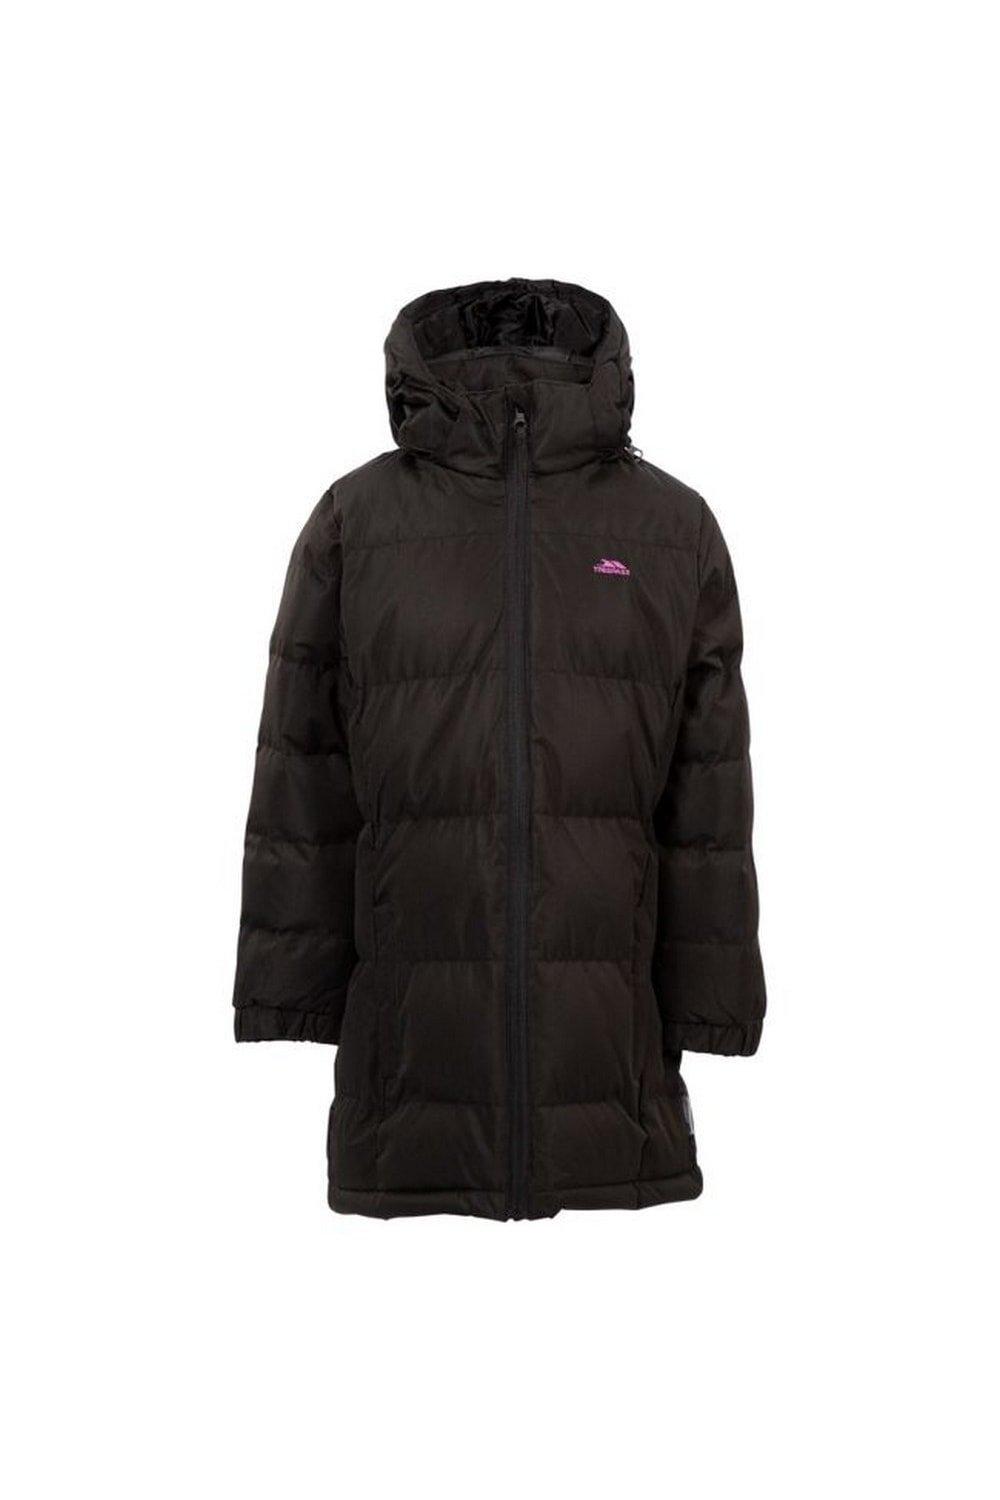 Стеганое пальто Tiffy Trespass, черный куртка утепленная для девочек demix бежевый